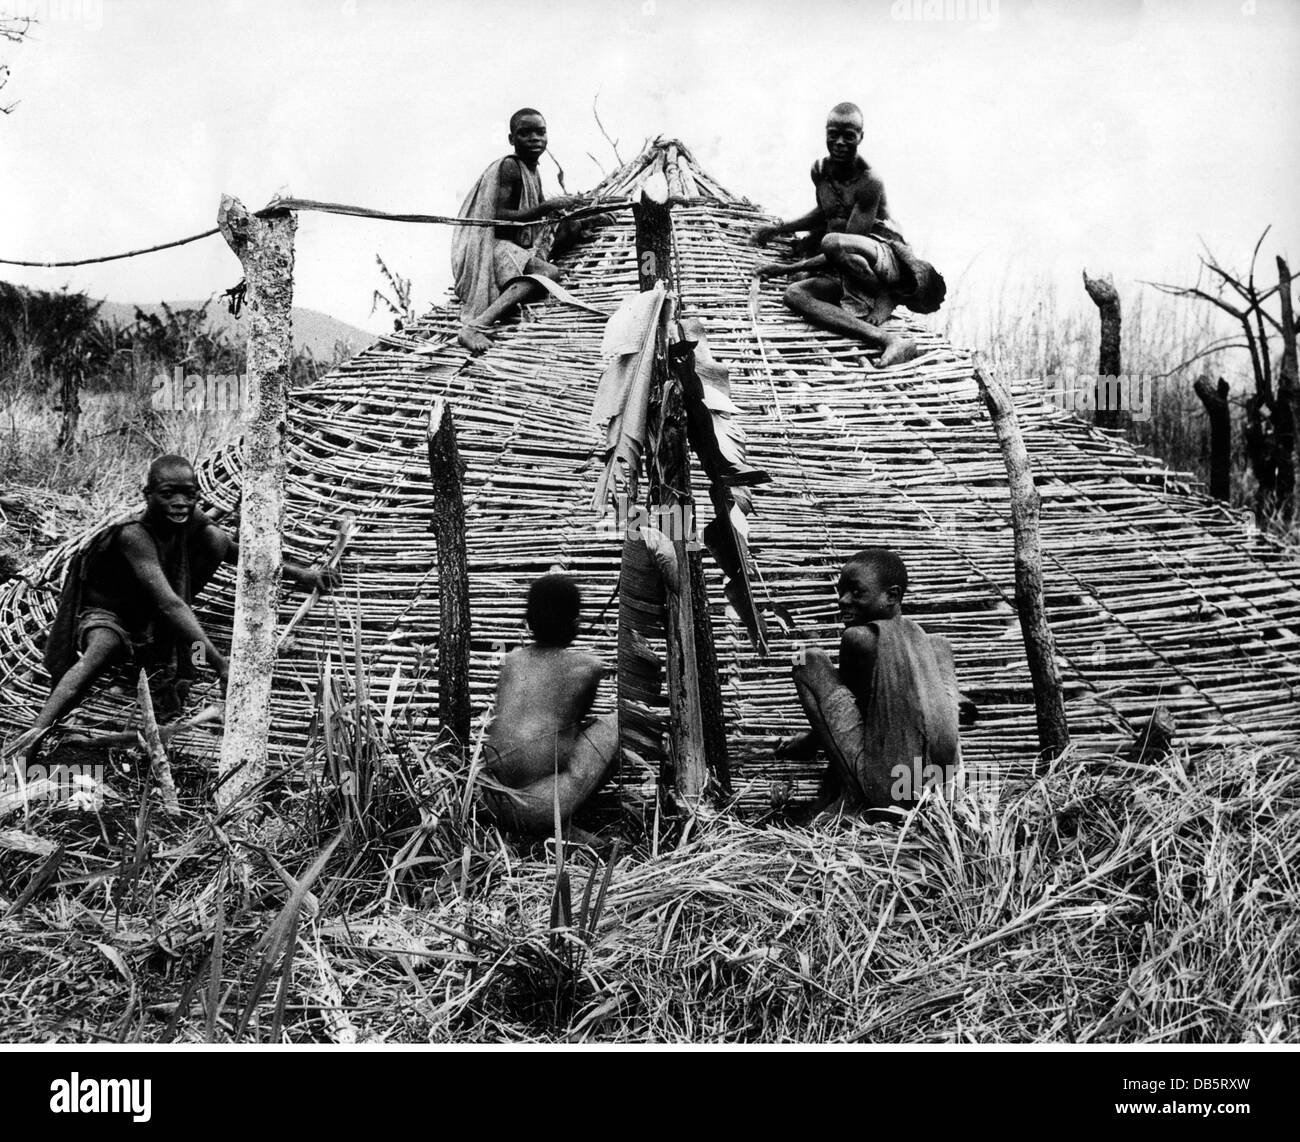 Geographie / Reisen, Uganda, Menschen, junge afrikanische Dorfbewohner bauen eine Hütte, um 1950, Zusatz-Rechte-Clearences-nicht vorhanden Stockfoto